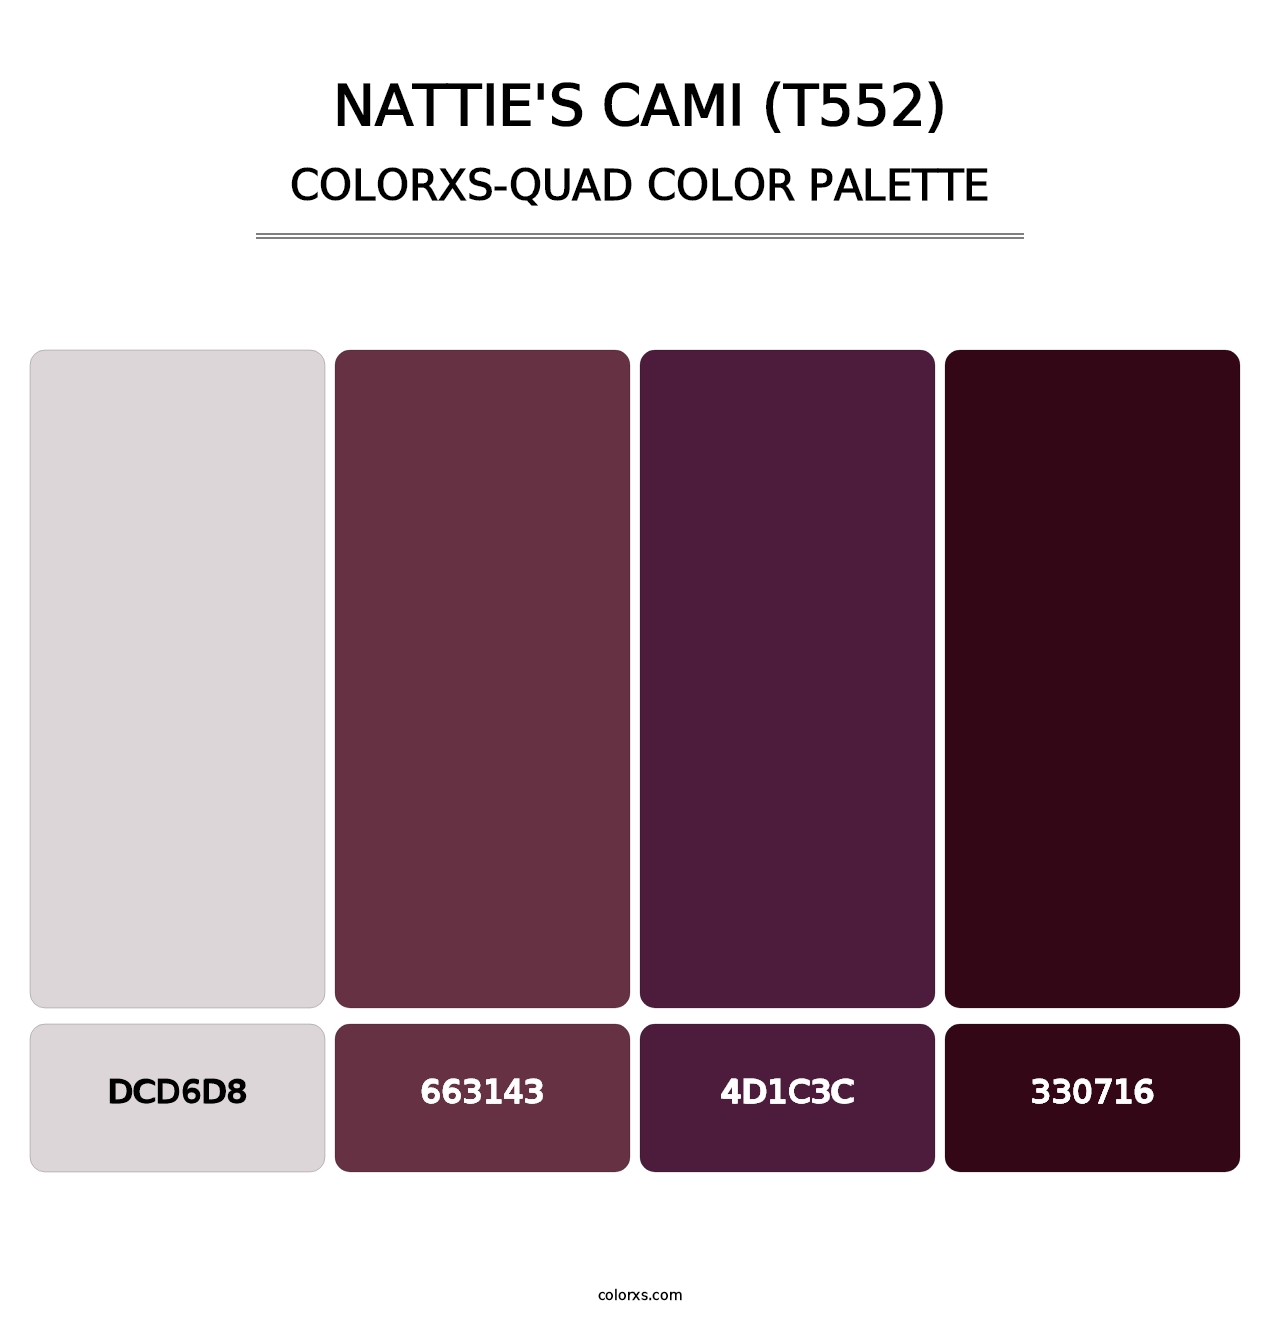 Nattie's Cami (T552) - Colorxs Quad Palette